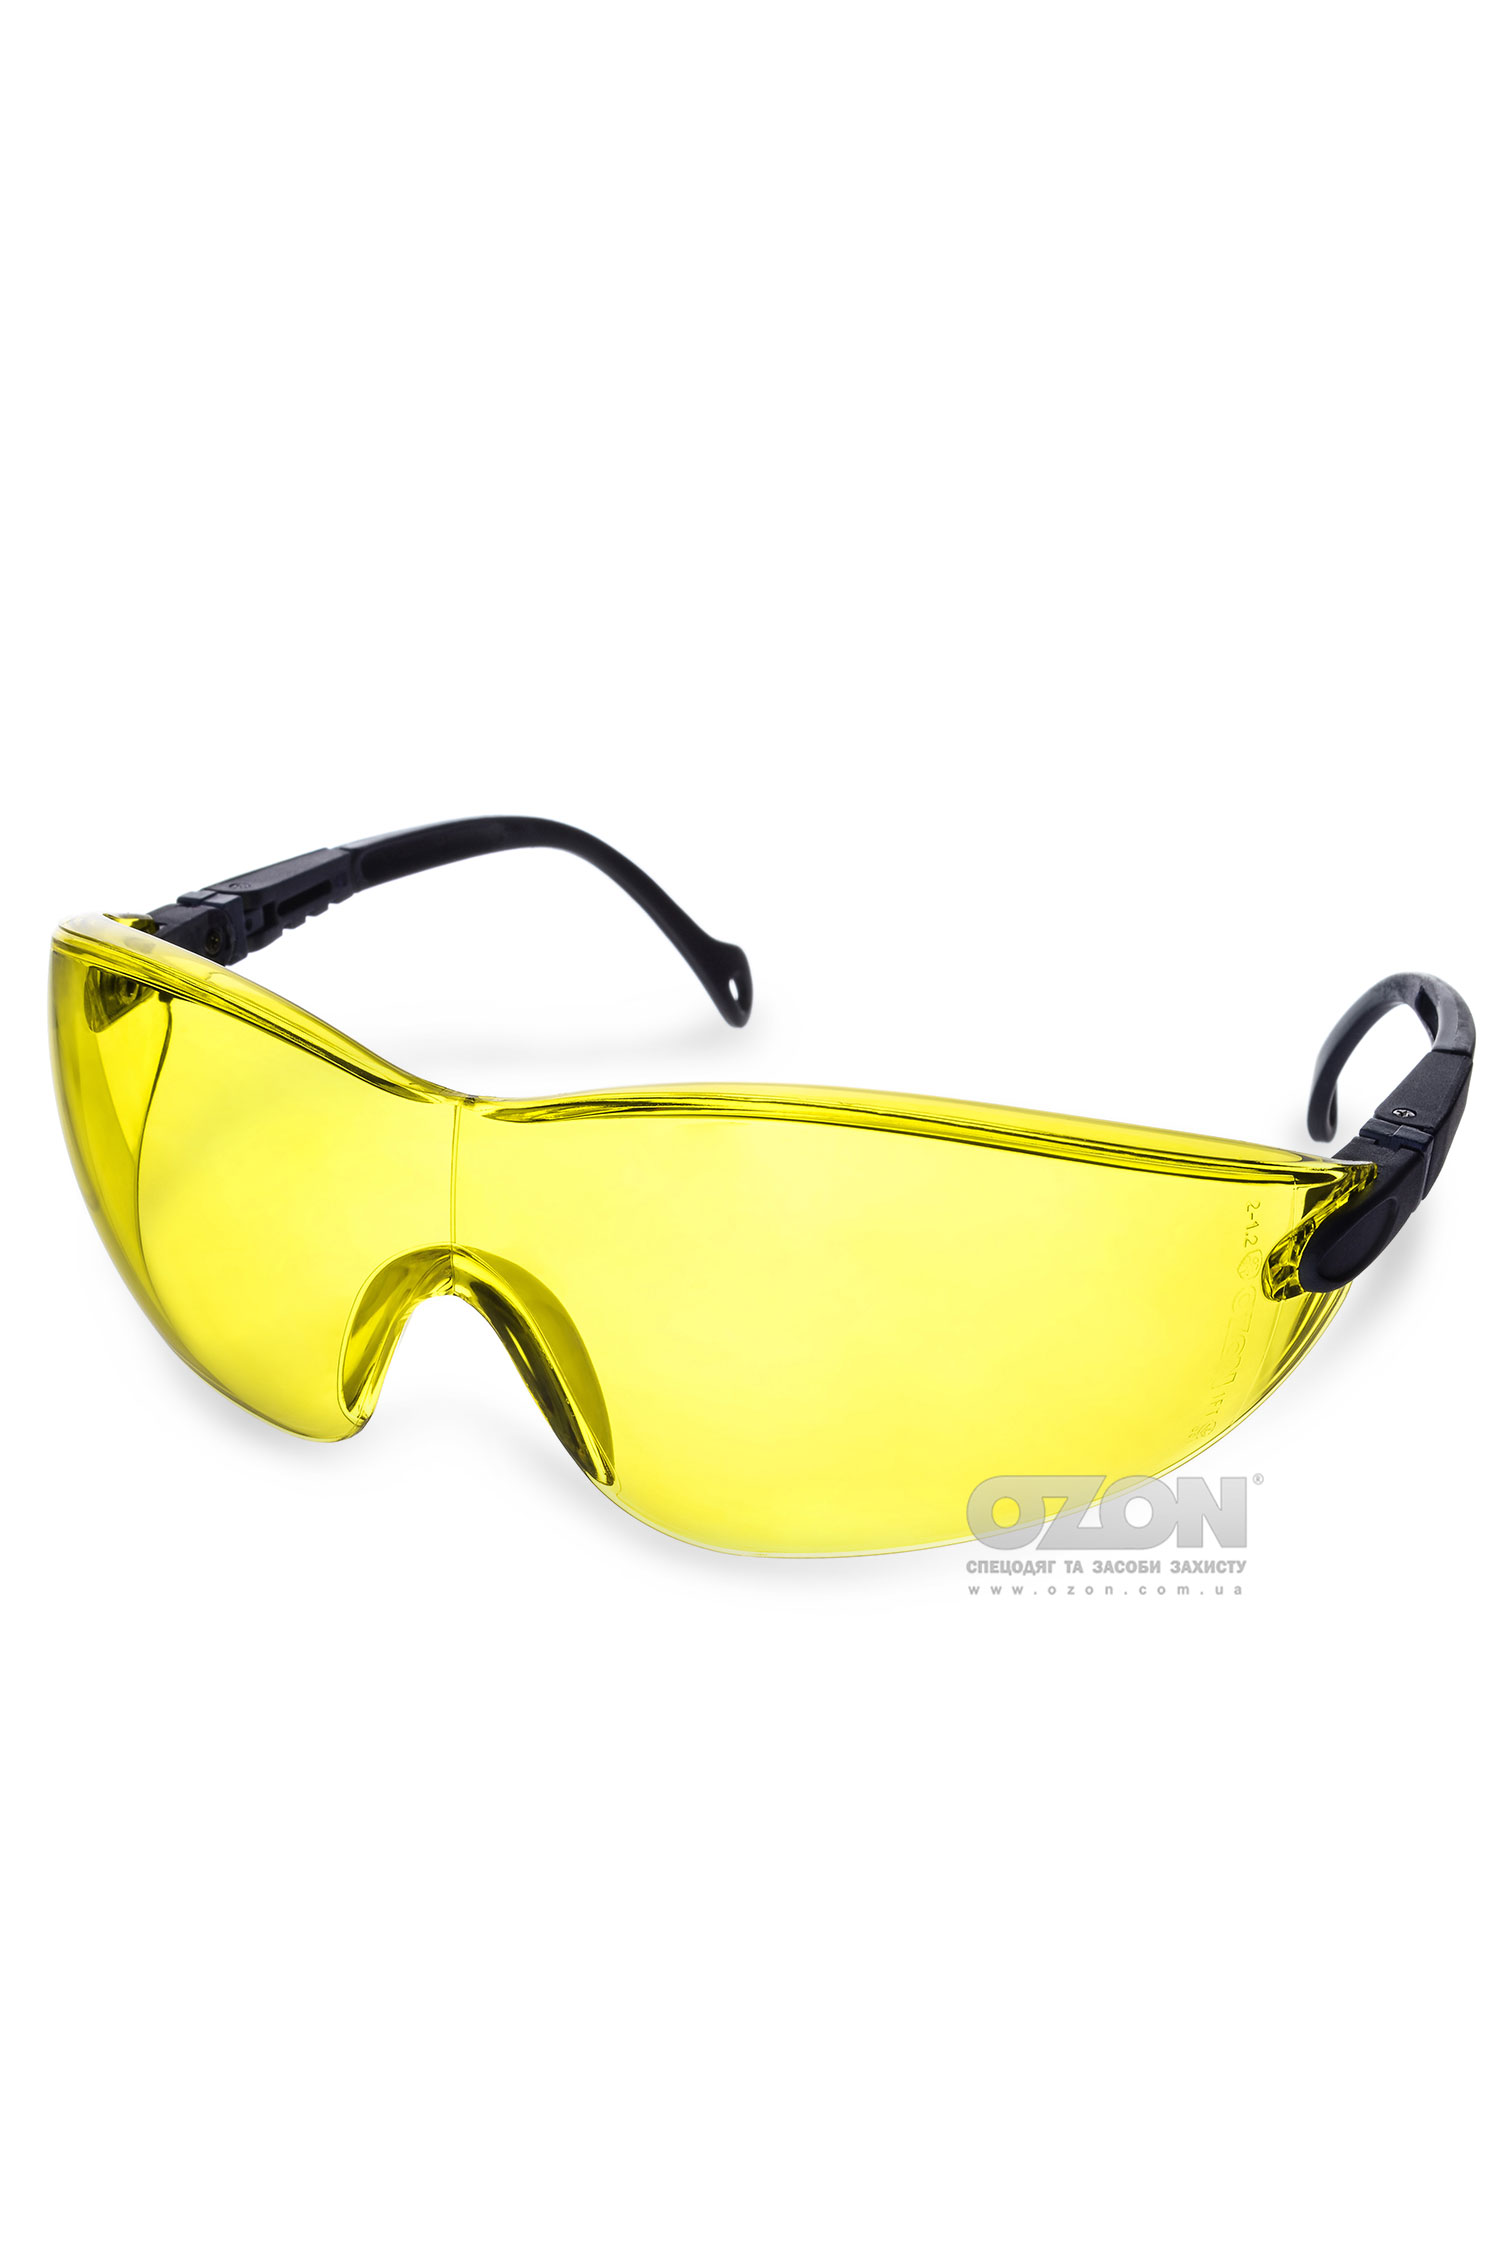 Защитные очки OZON™ 7-051 A/F, желтые - Фото 1